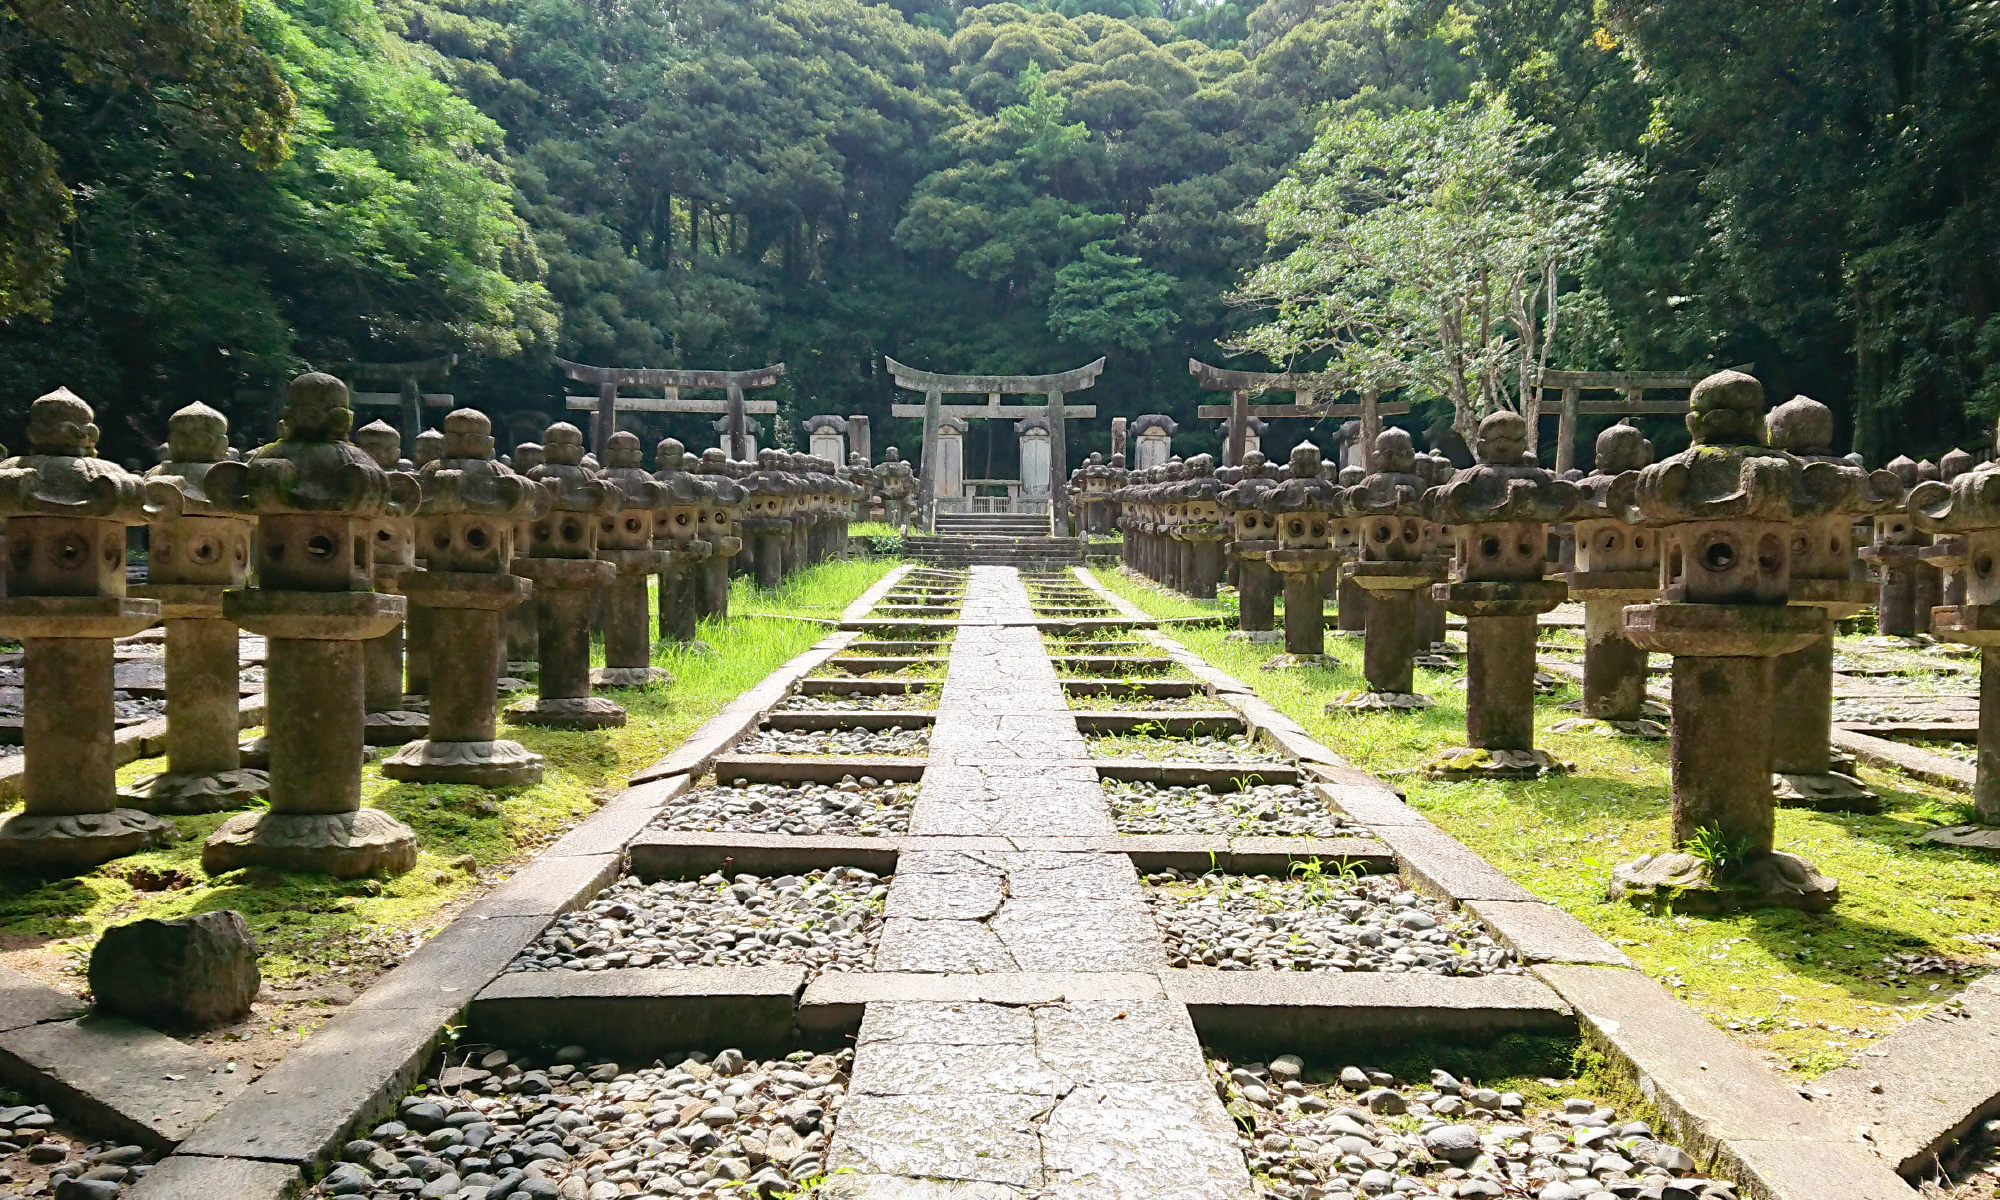 Visita al Templo Tōkōji